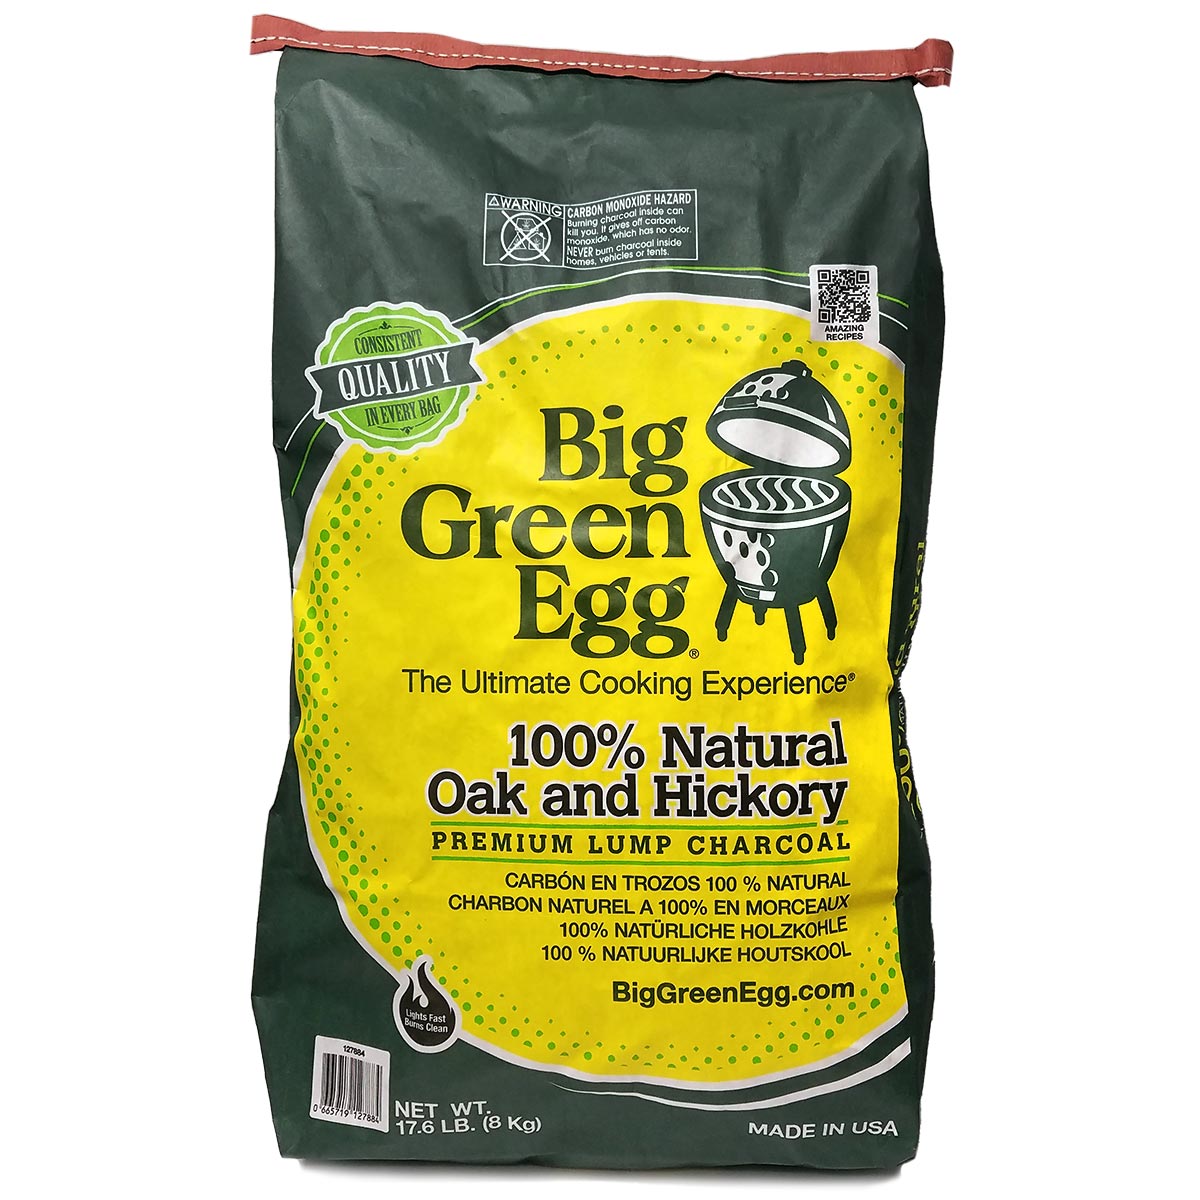 Kader Vergemakkelijken rek Premium Oak & Hickory Lump Charcoal | Big Green Egg – Outdoor Home